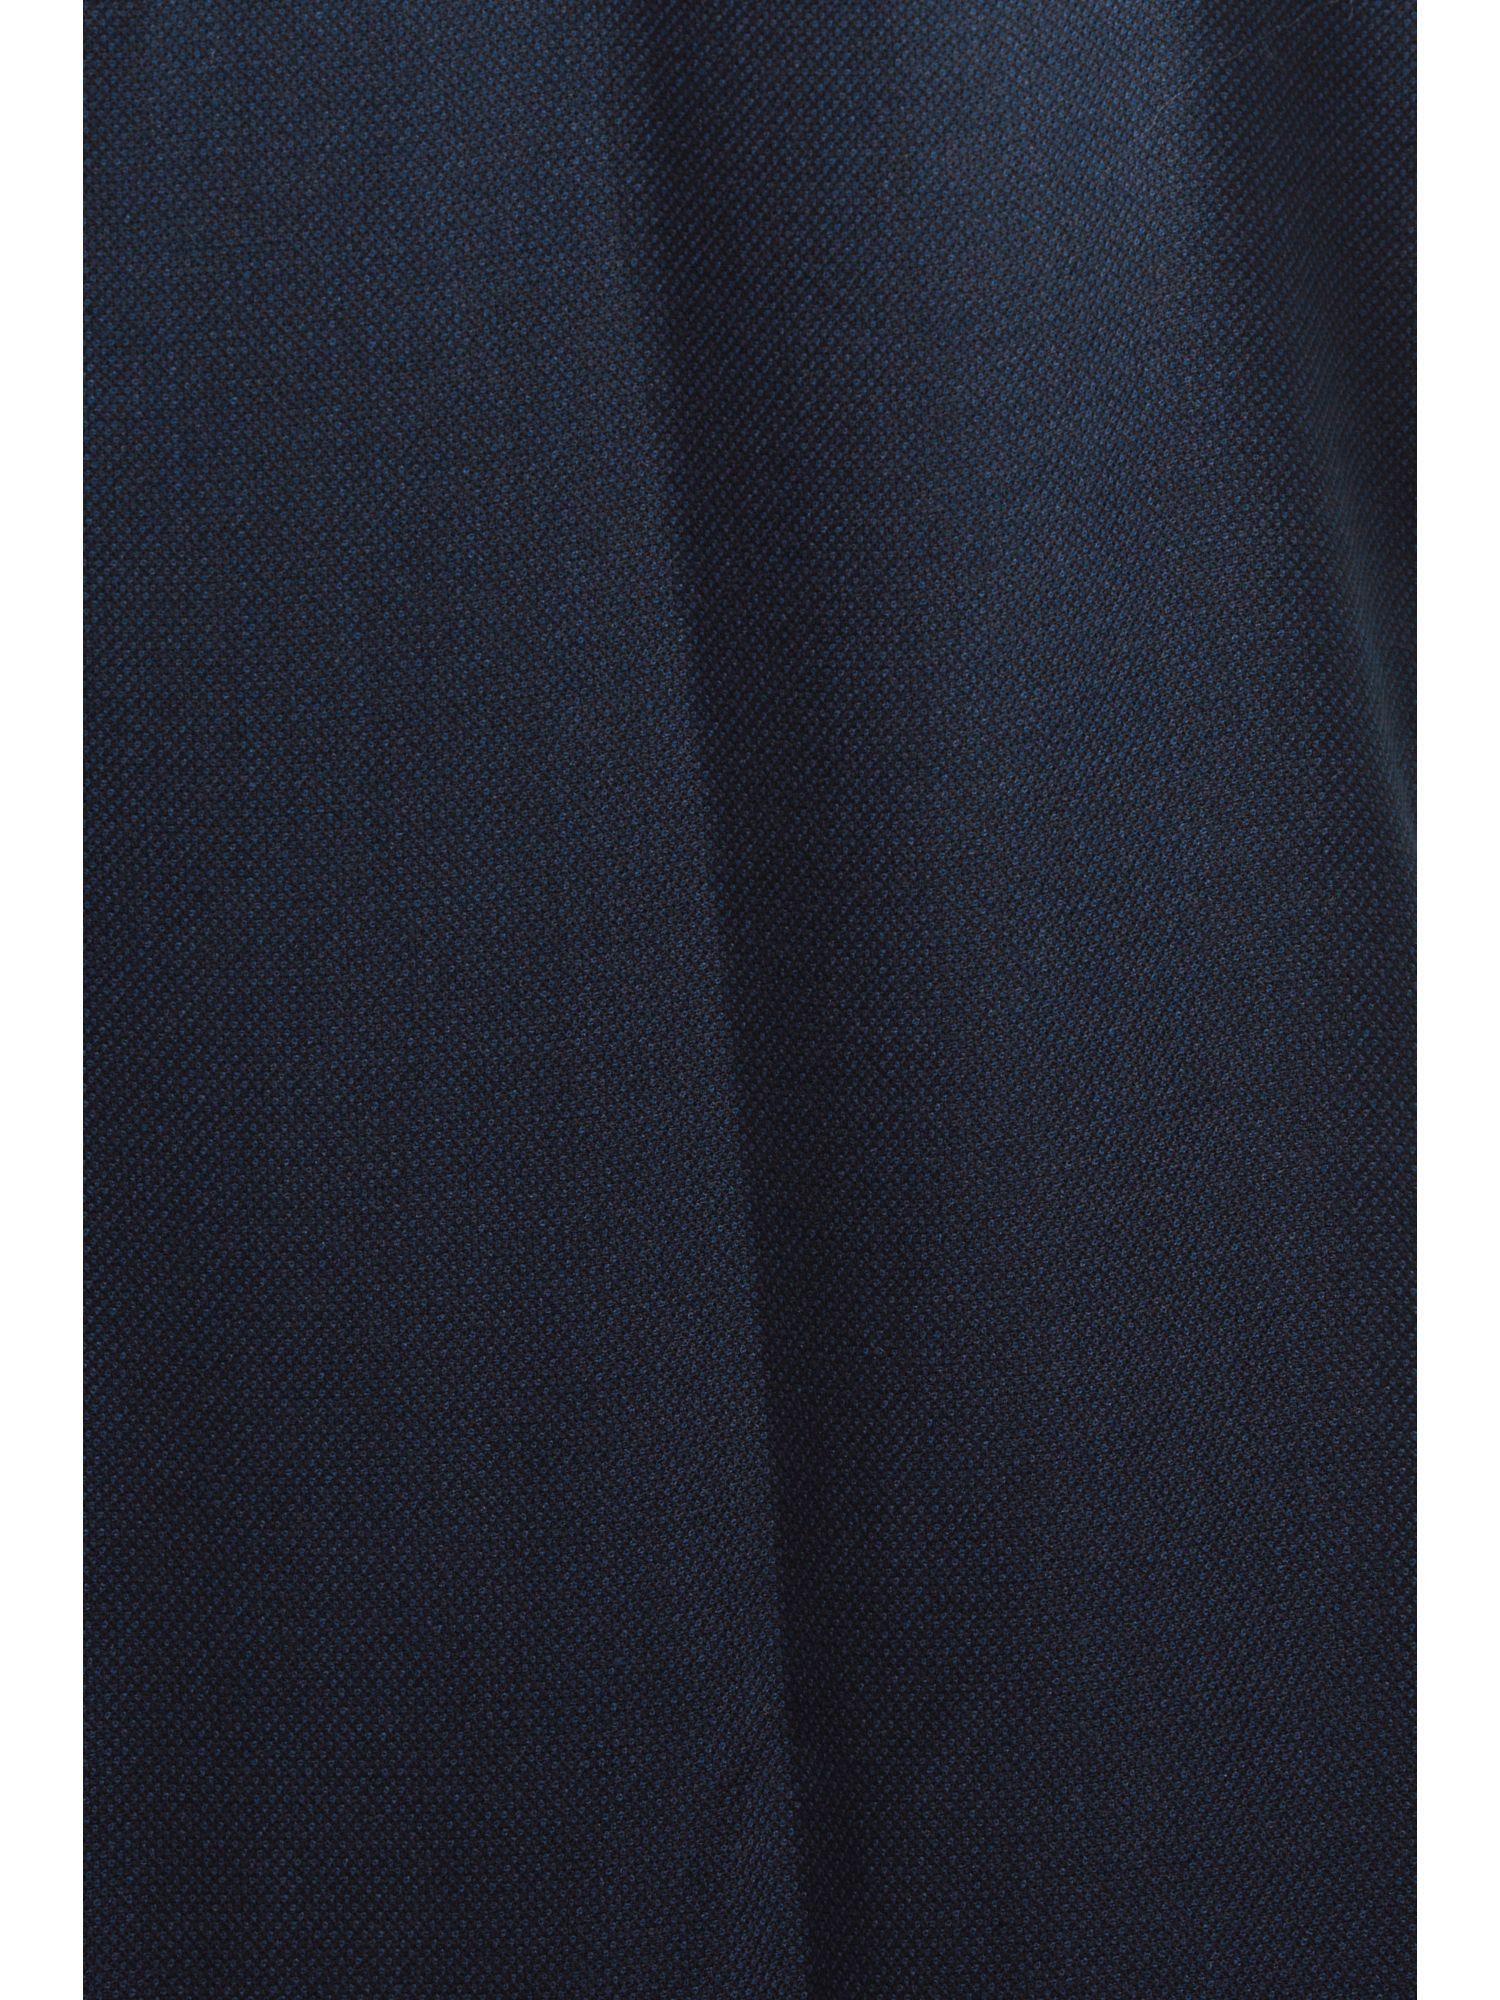 Esprit Collection Anzughose Mix & NAVY Anzughose Birdseye-Muster mit Match